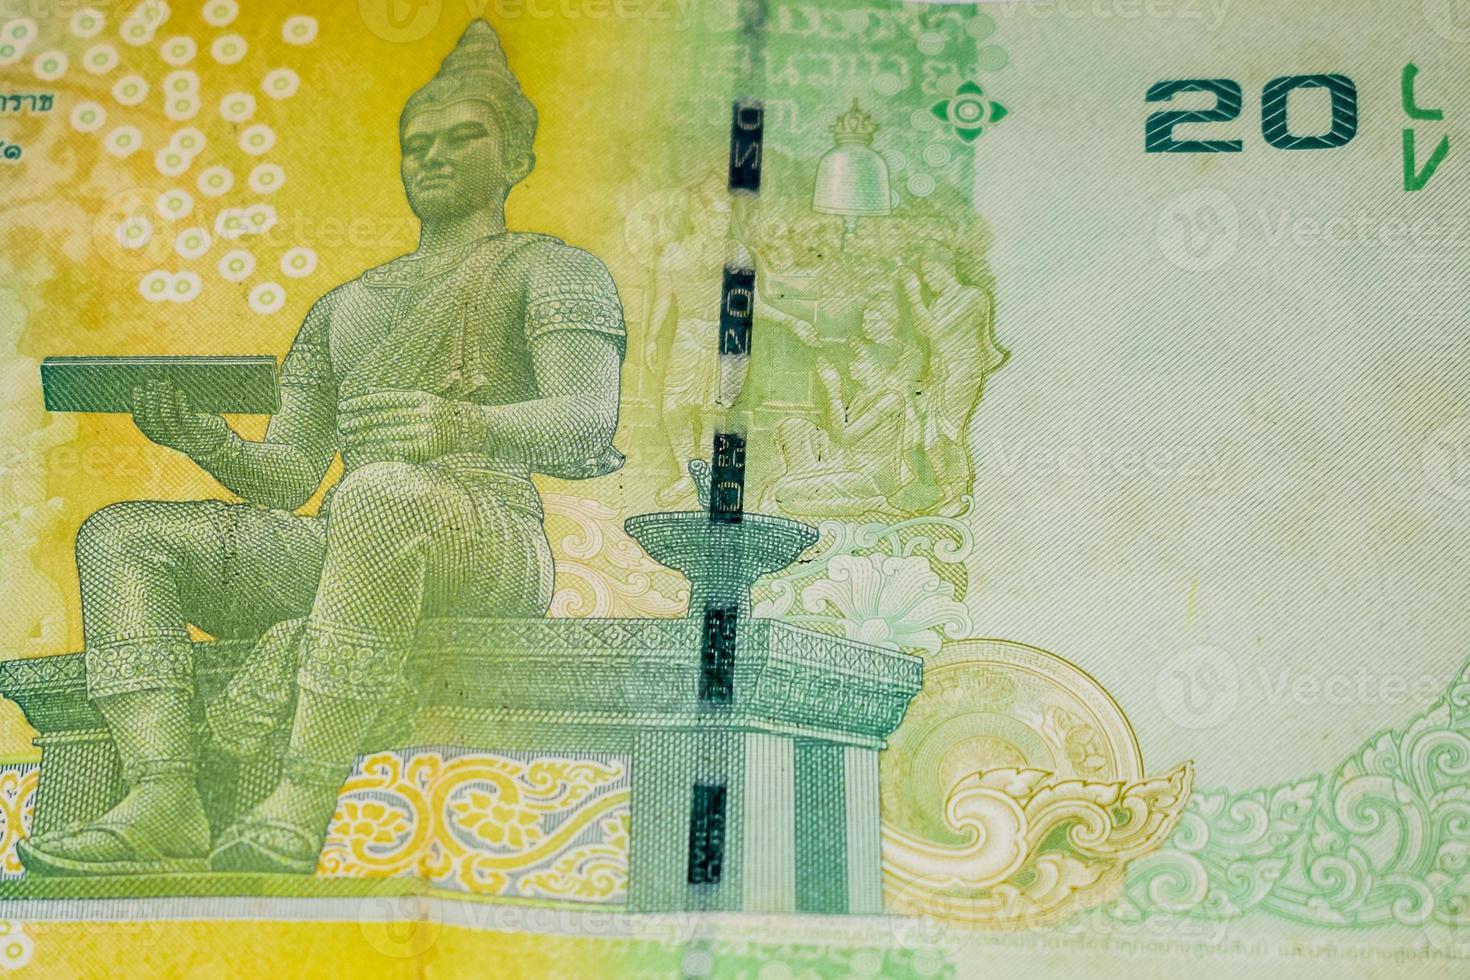 Nota de moeda estrangeira rara de 20 baht da tailândia, rei bhumibol adulyadej em 20 baht tailândia conta de dinheiro close-up, conta de moeda nacional da tailândia foto